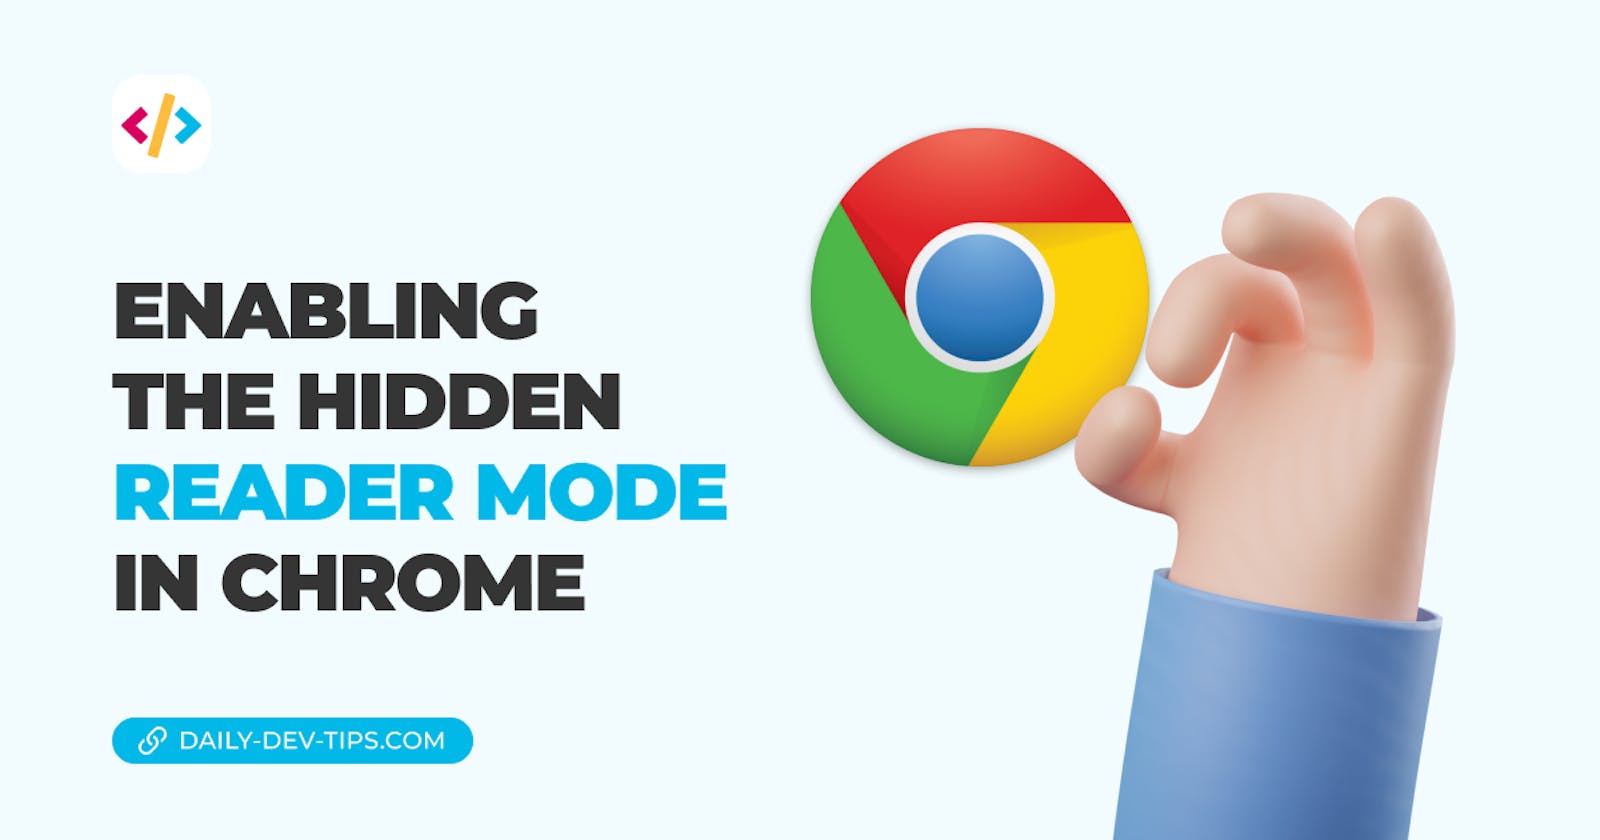 Enabling the hidden reader mode in Chrome